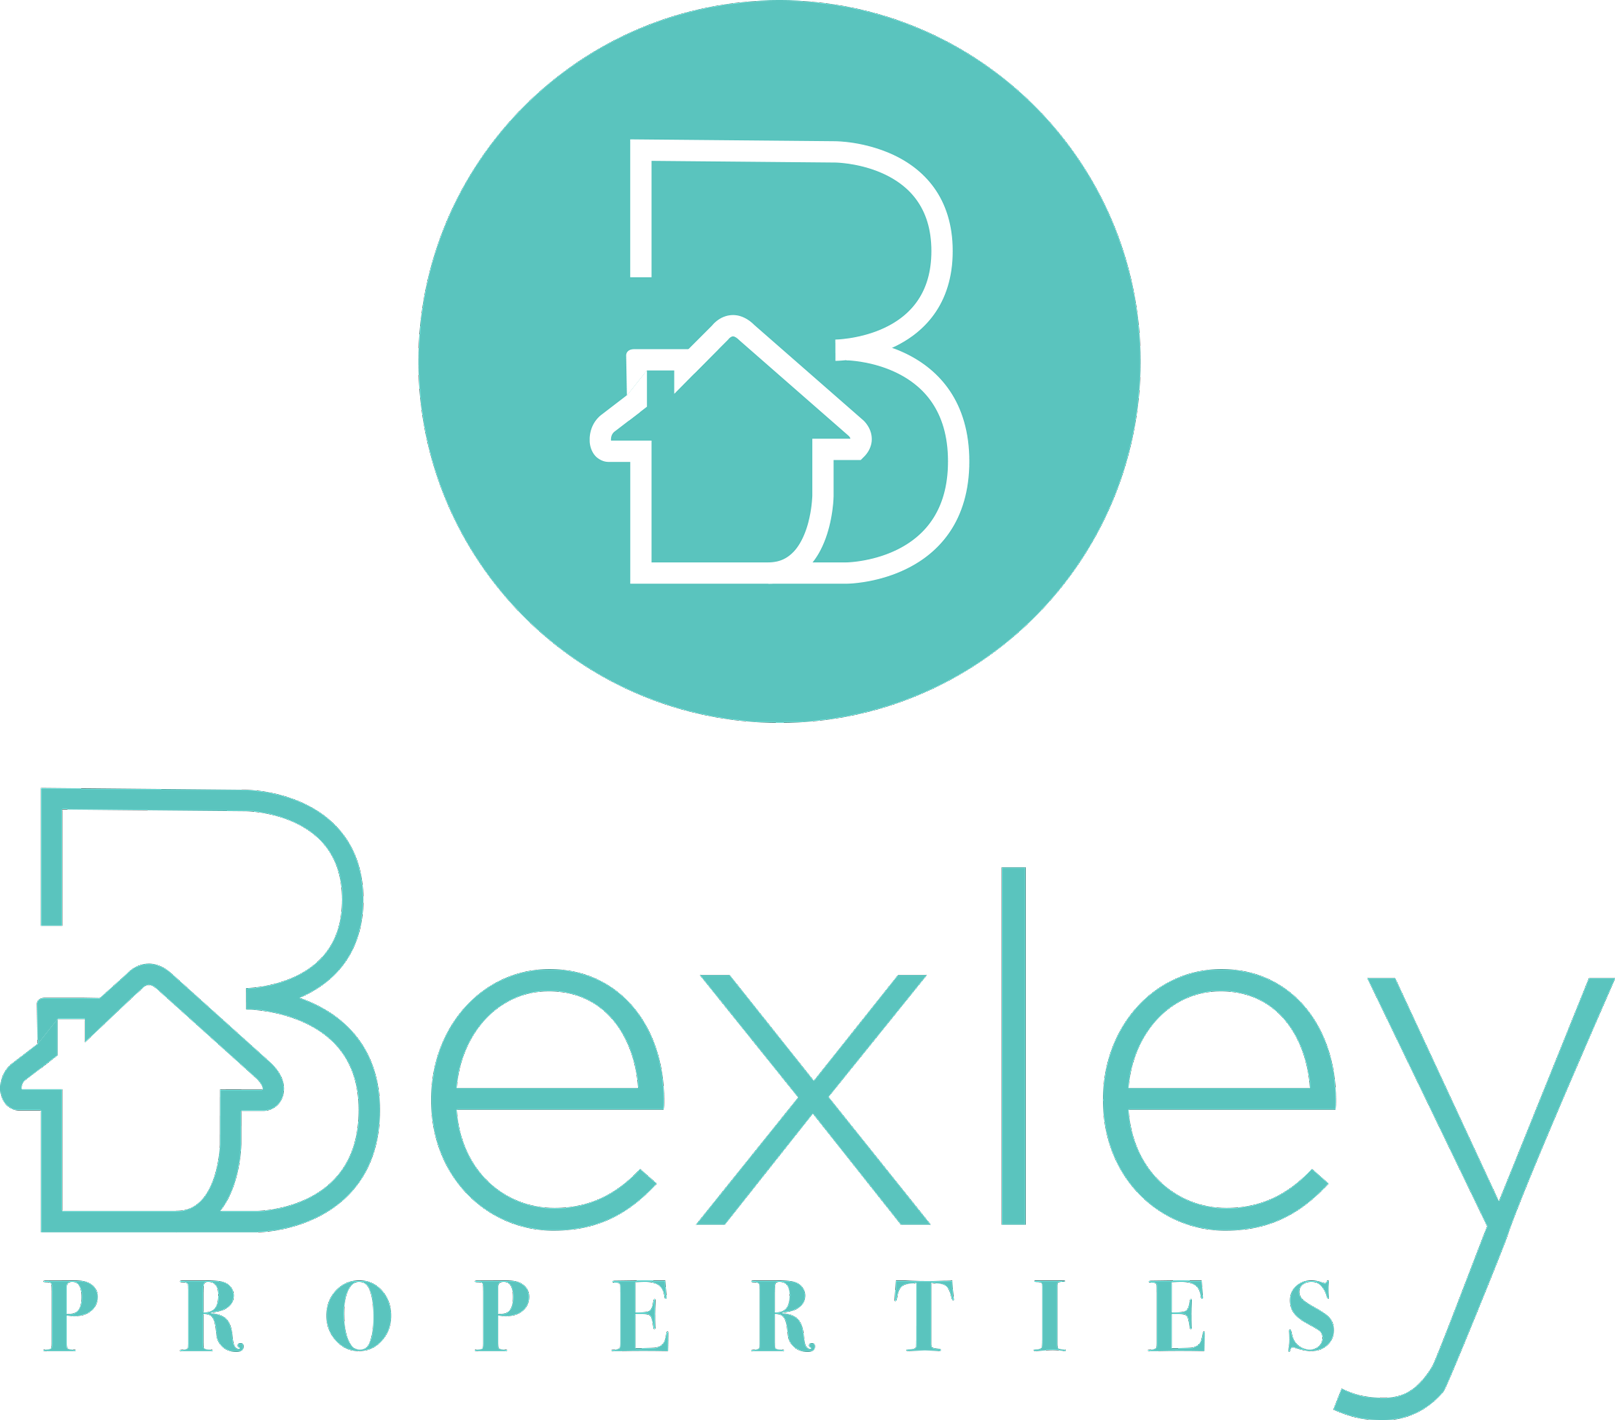 Bexley Properties